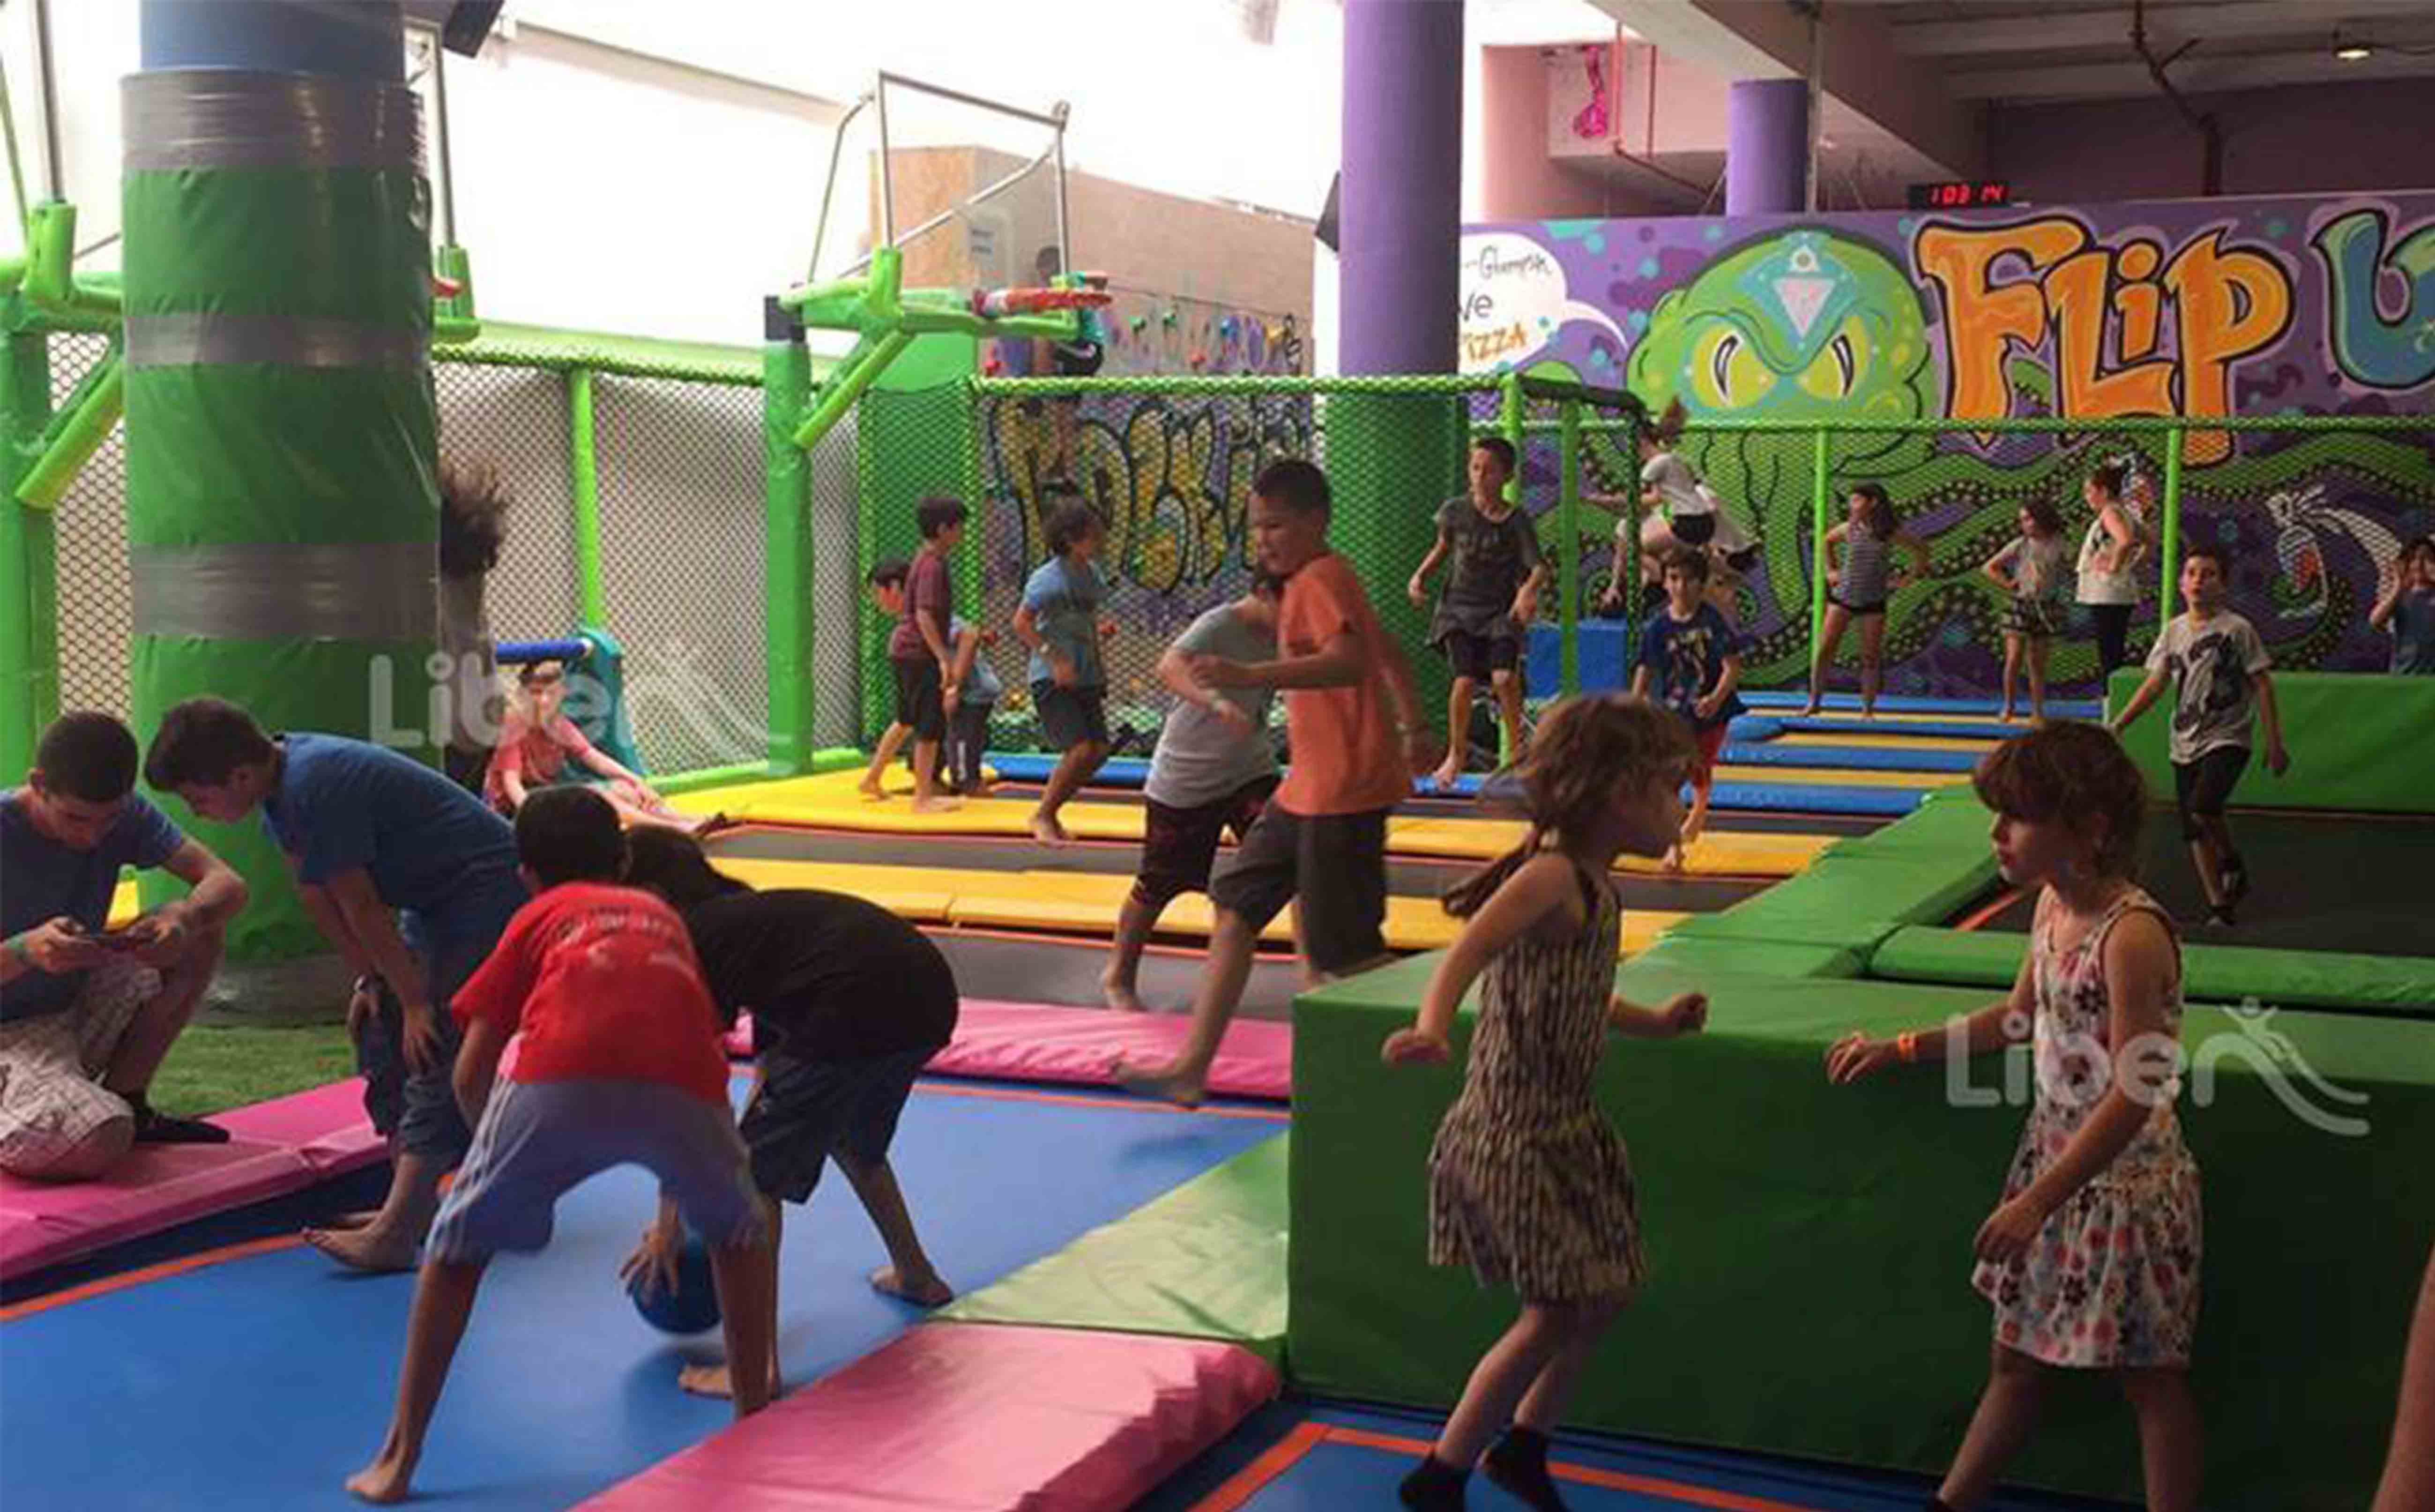 Liben new indoor trampoline park project in Israel